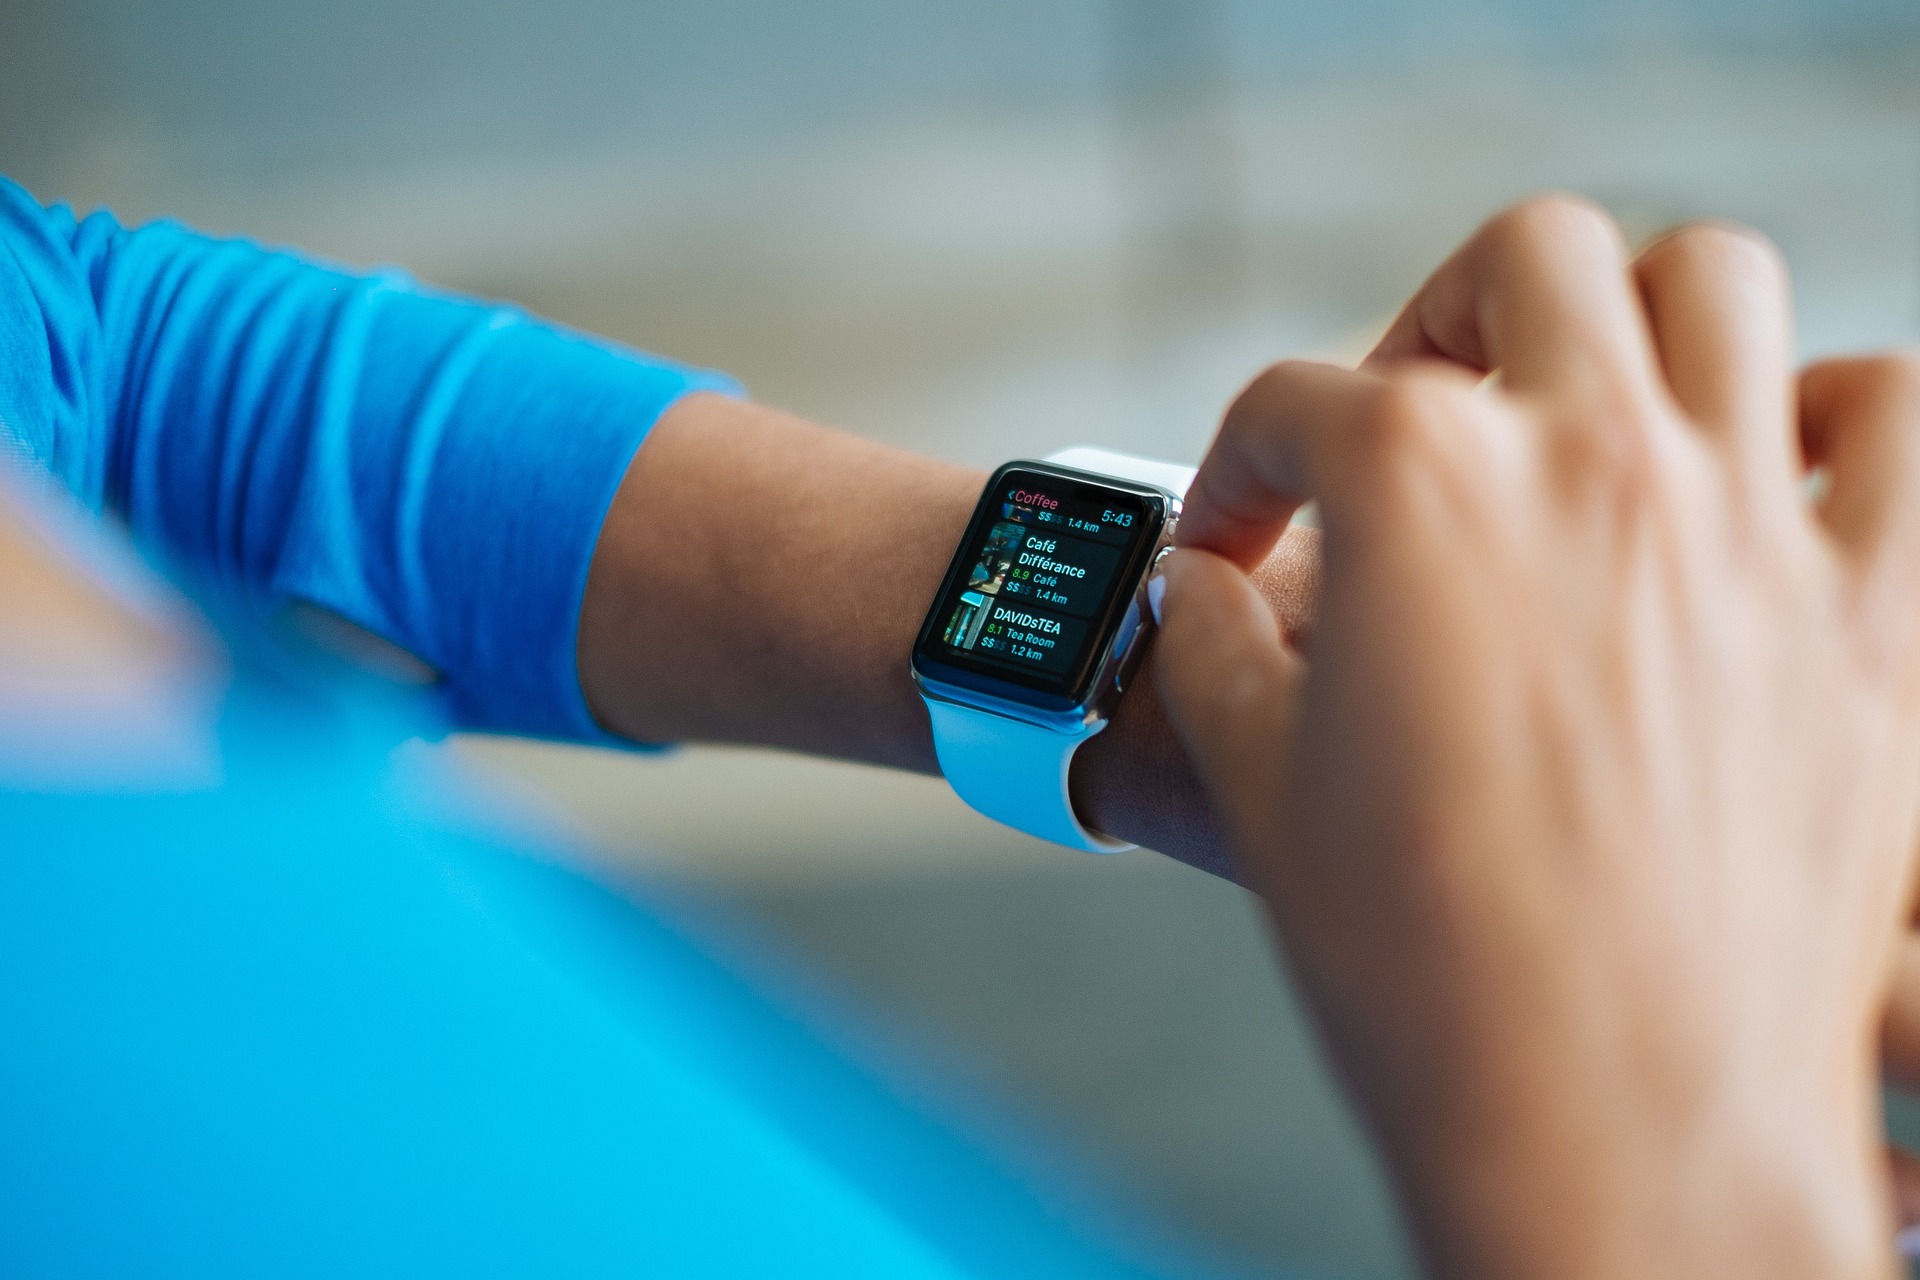 Le marché des montres connectées en plein boom, Apple Watch en tête des ventes